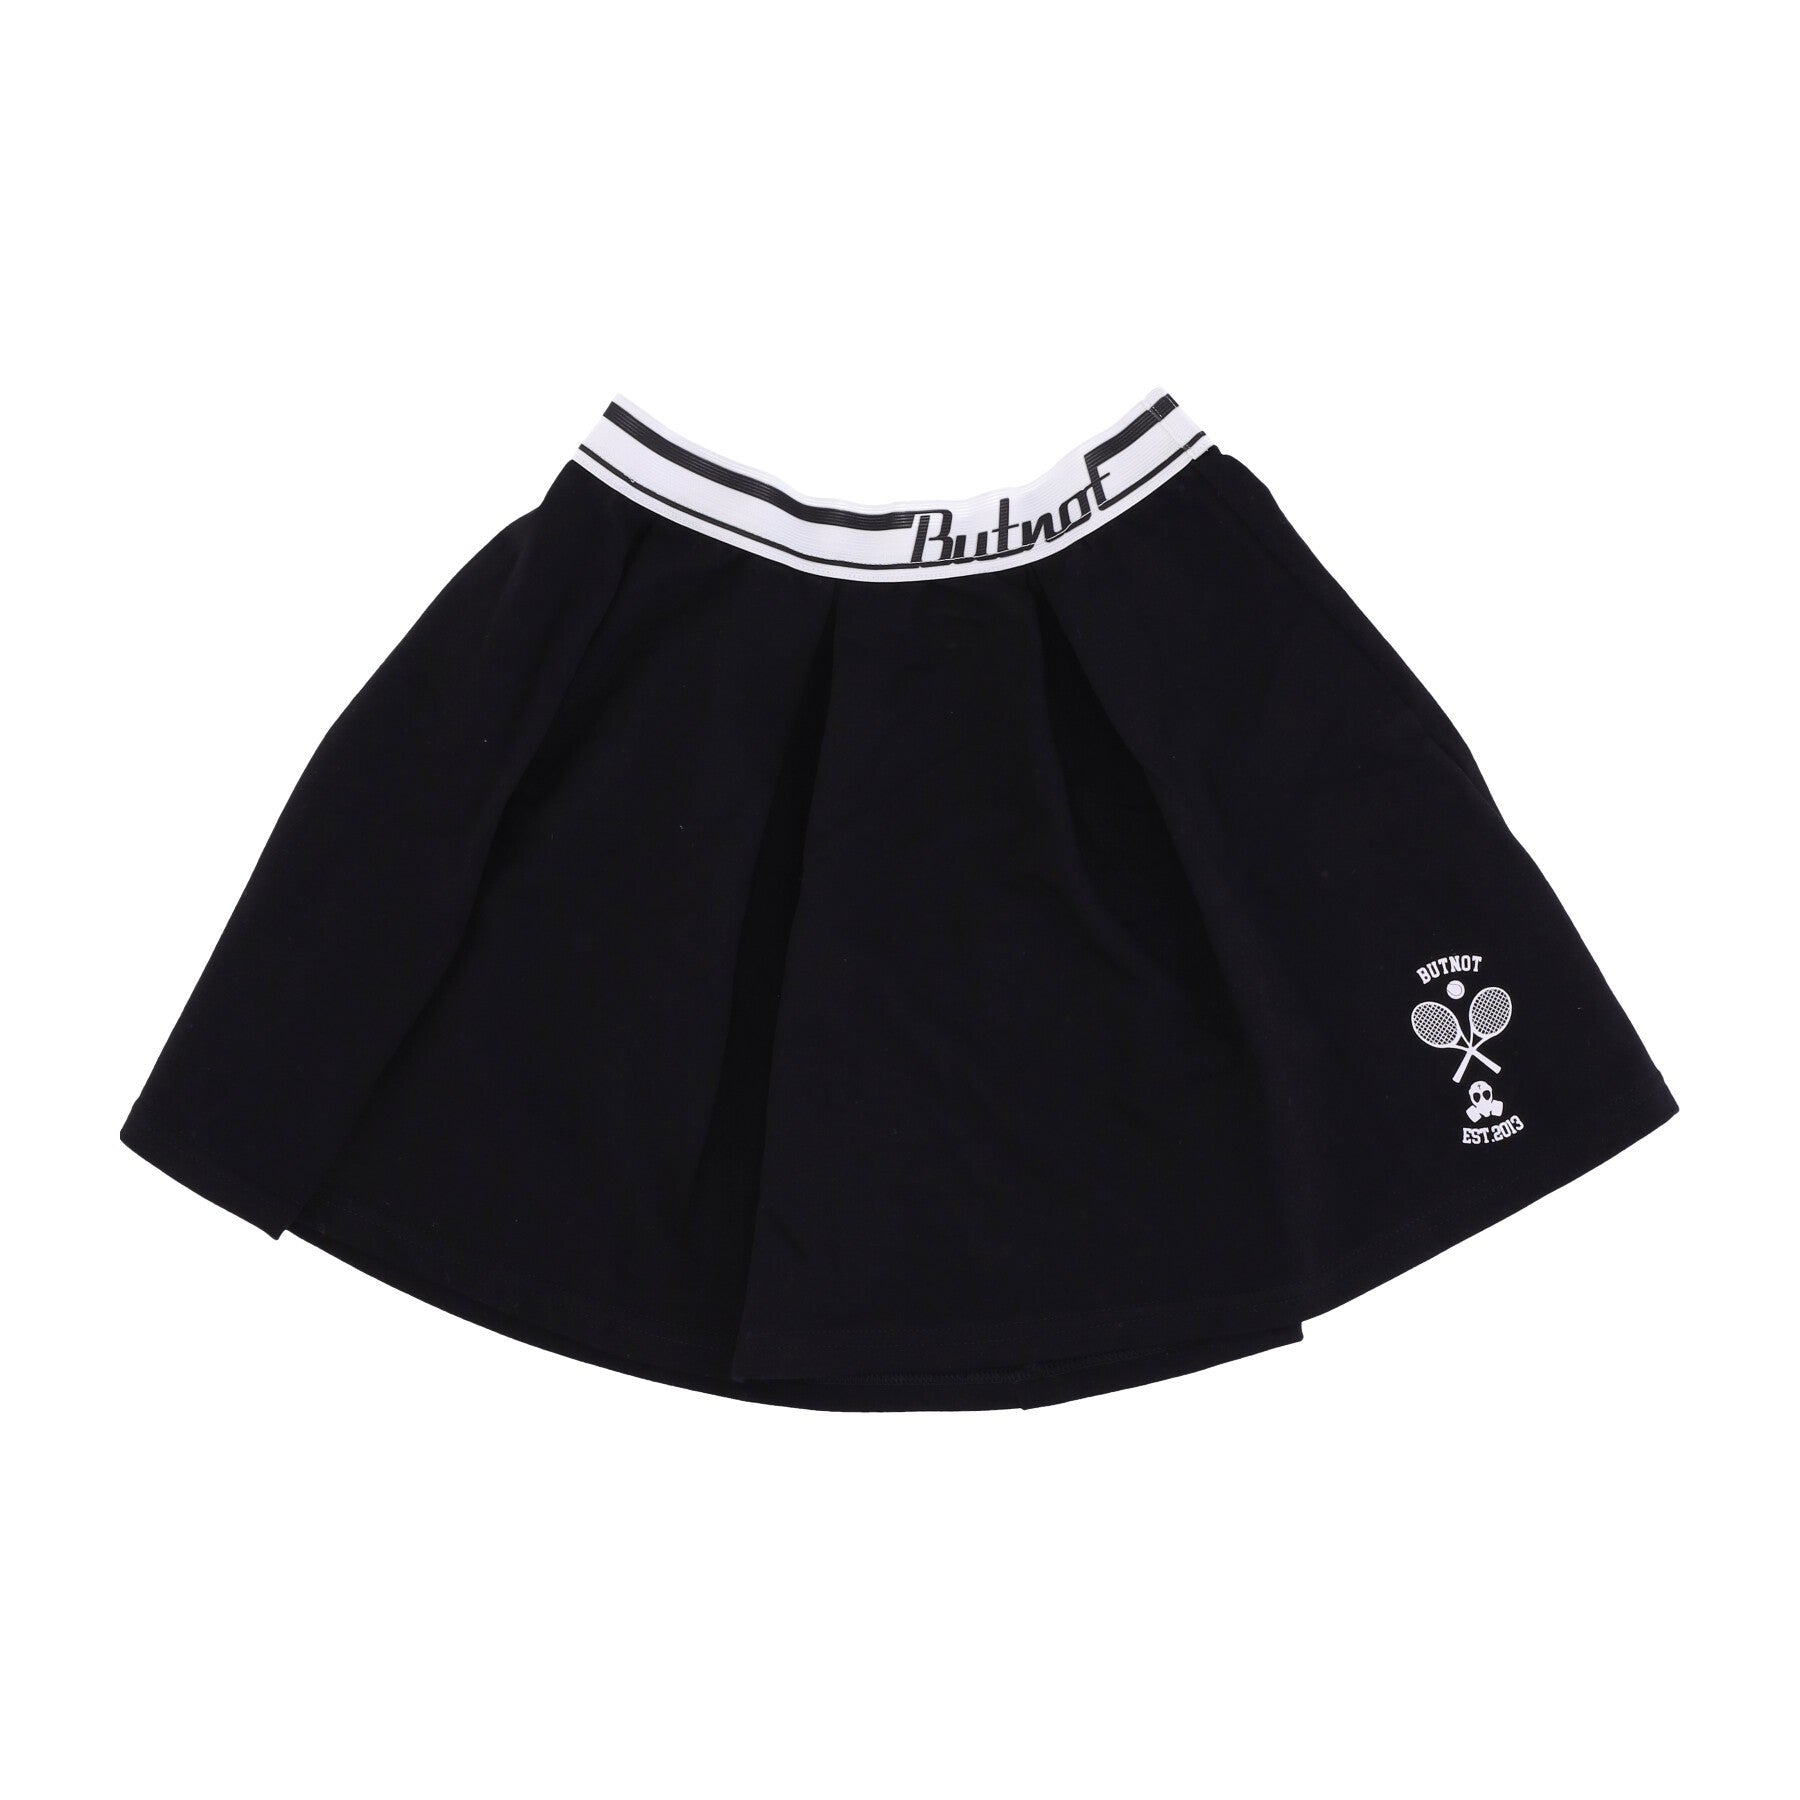 Short Skirt Women's Tennis Skirt Black